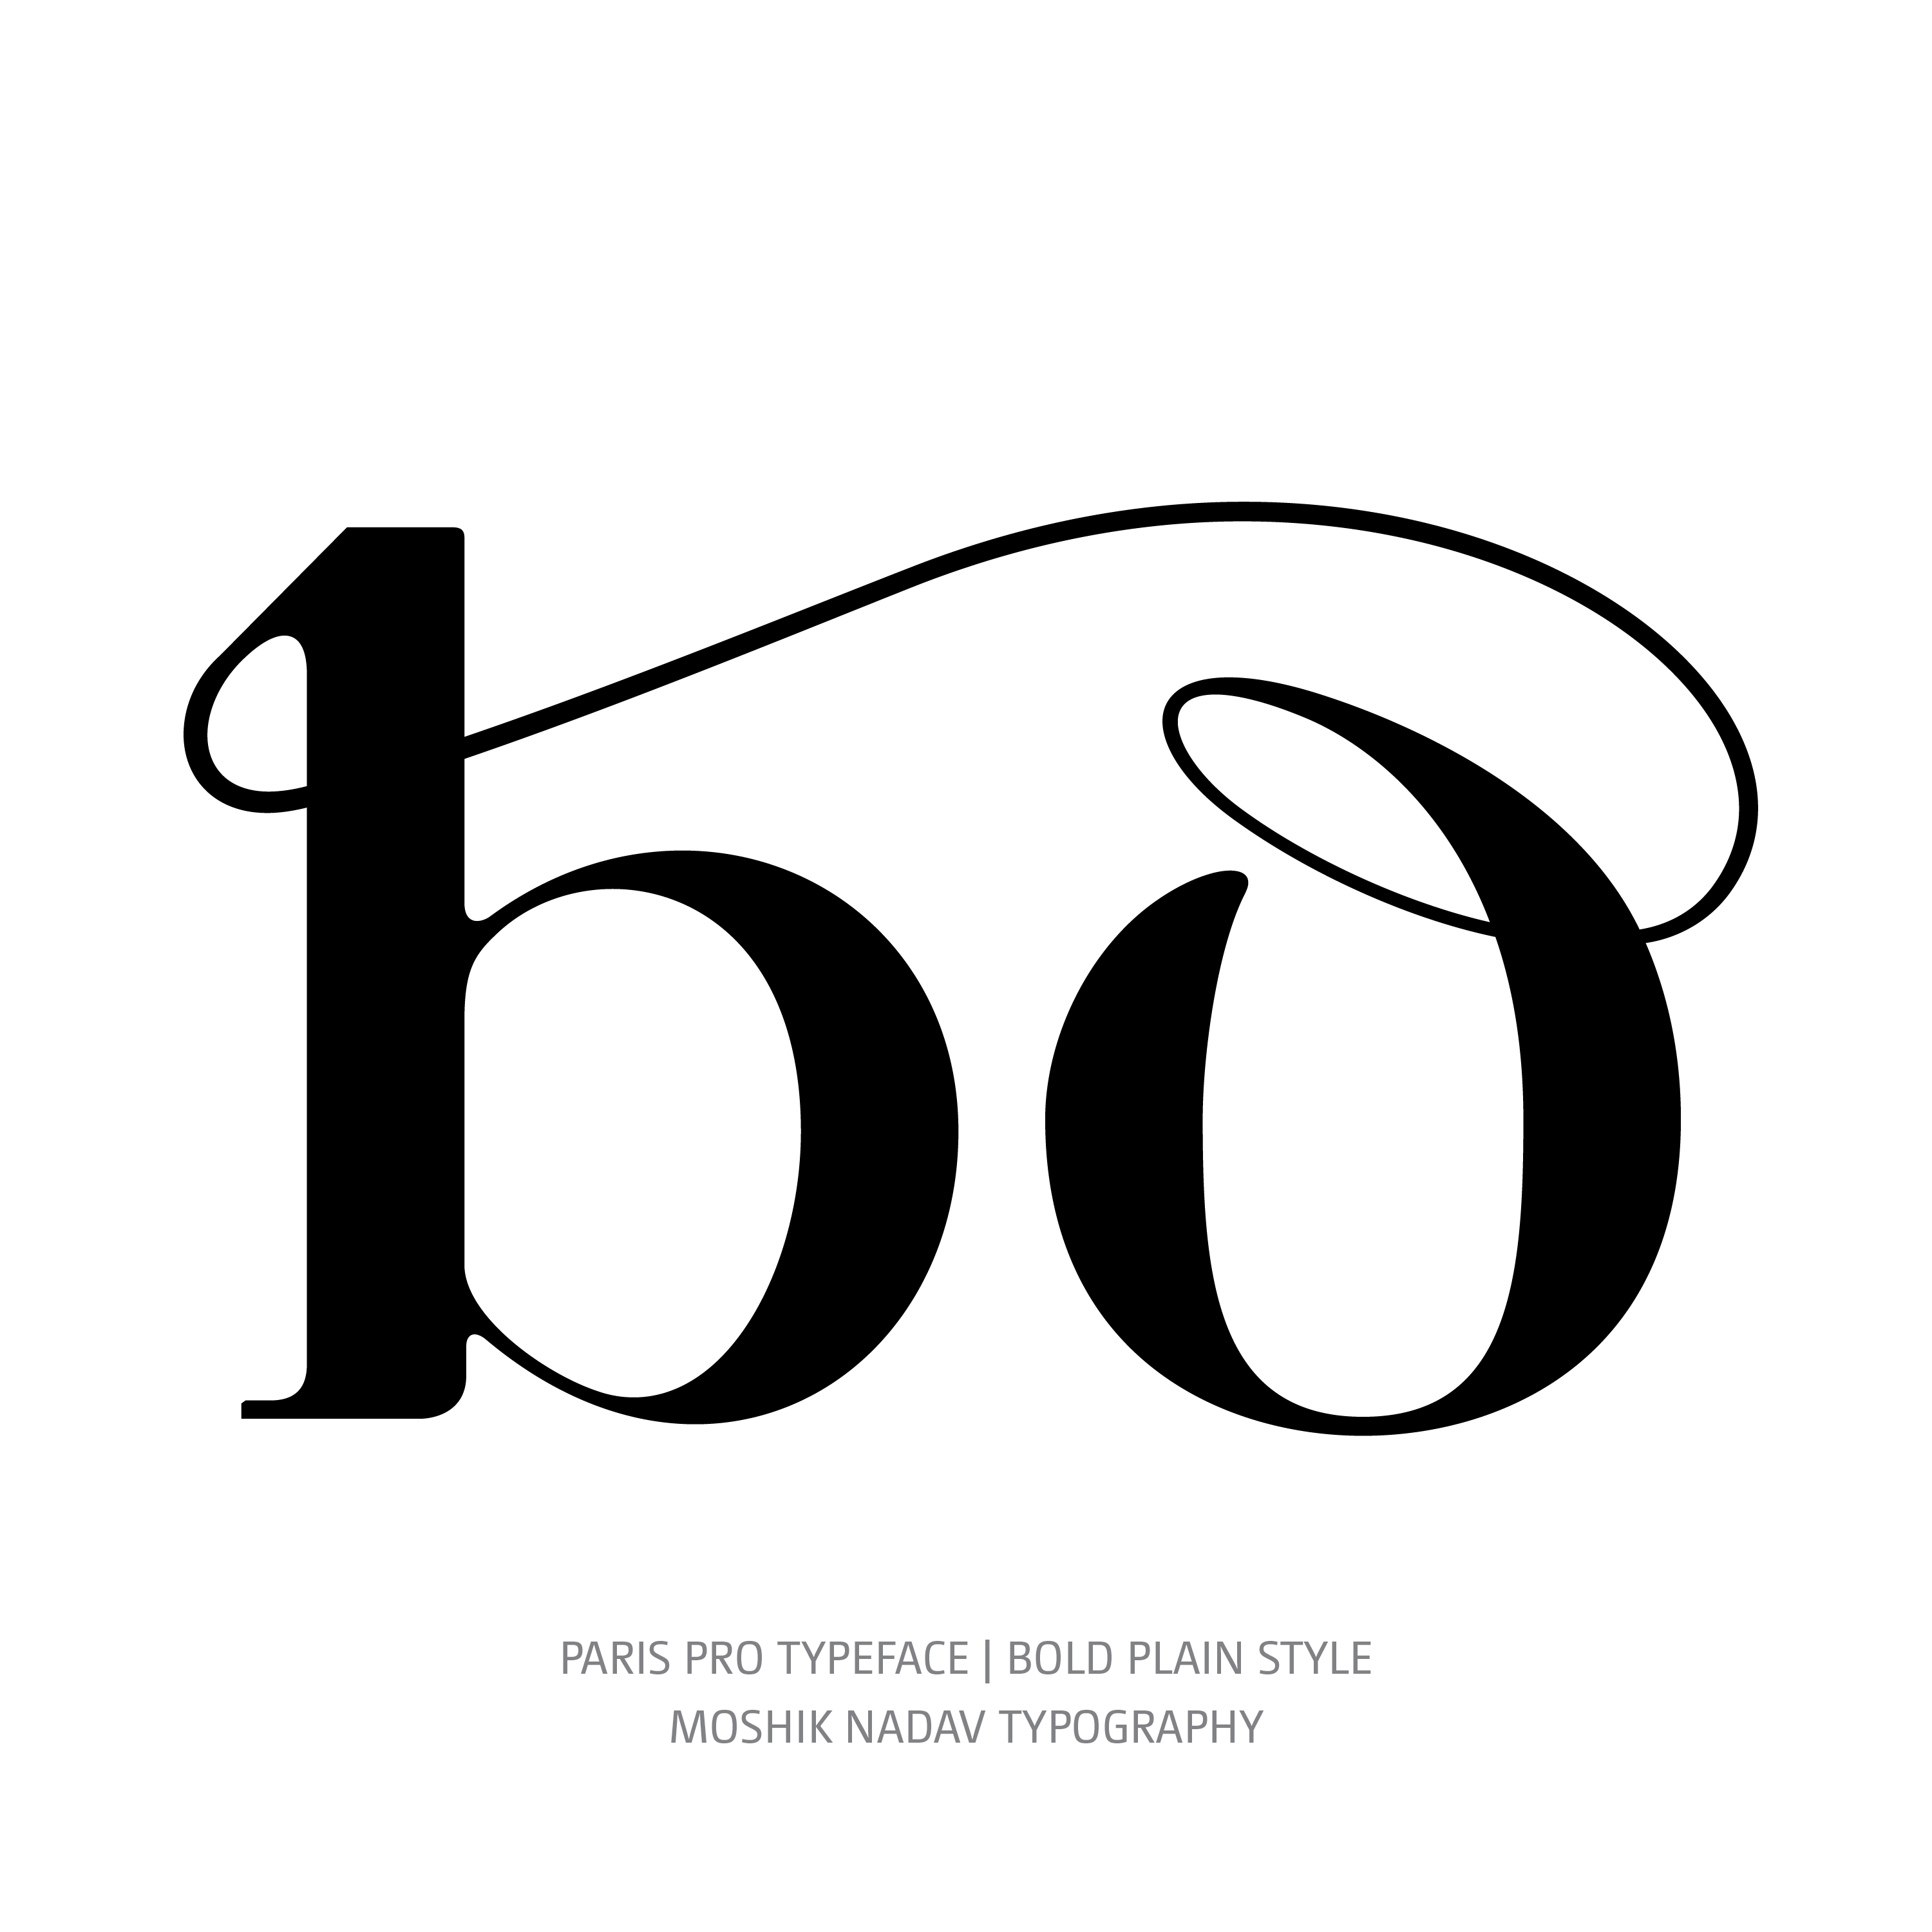 Paris Pro Typeface Bold bo ligature